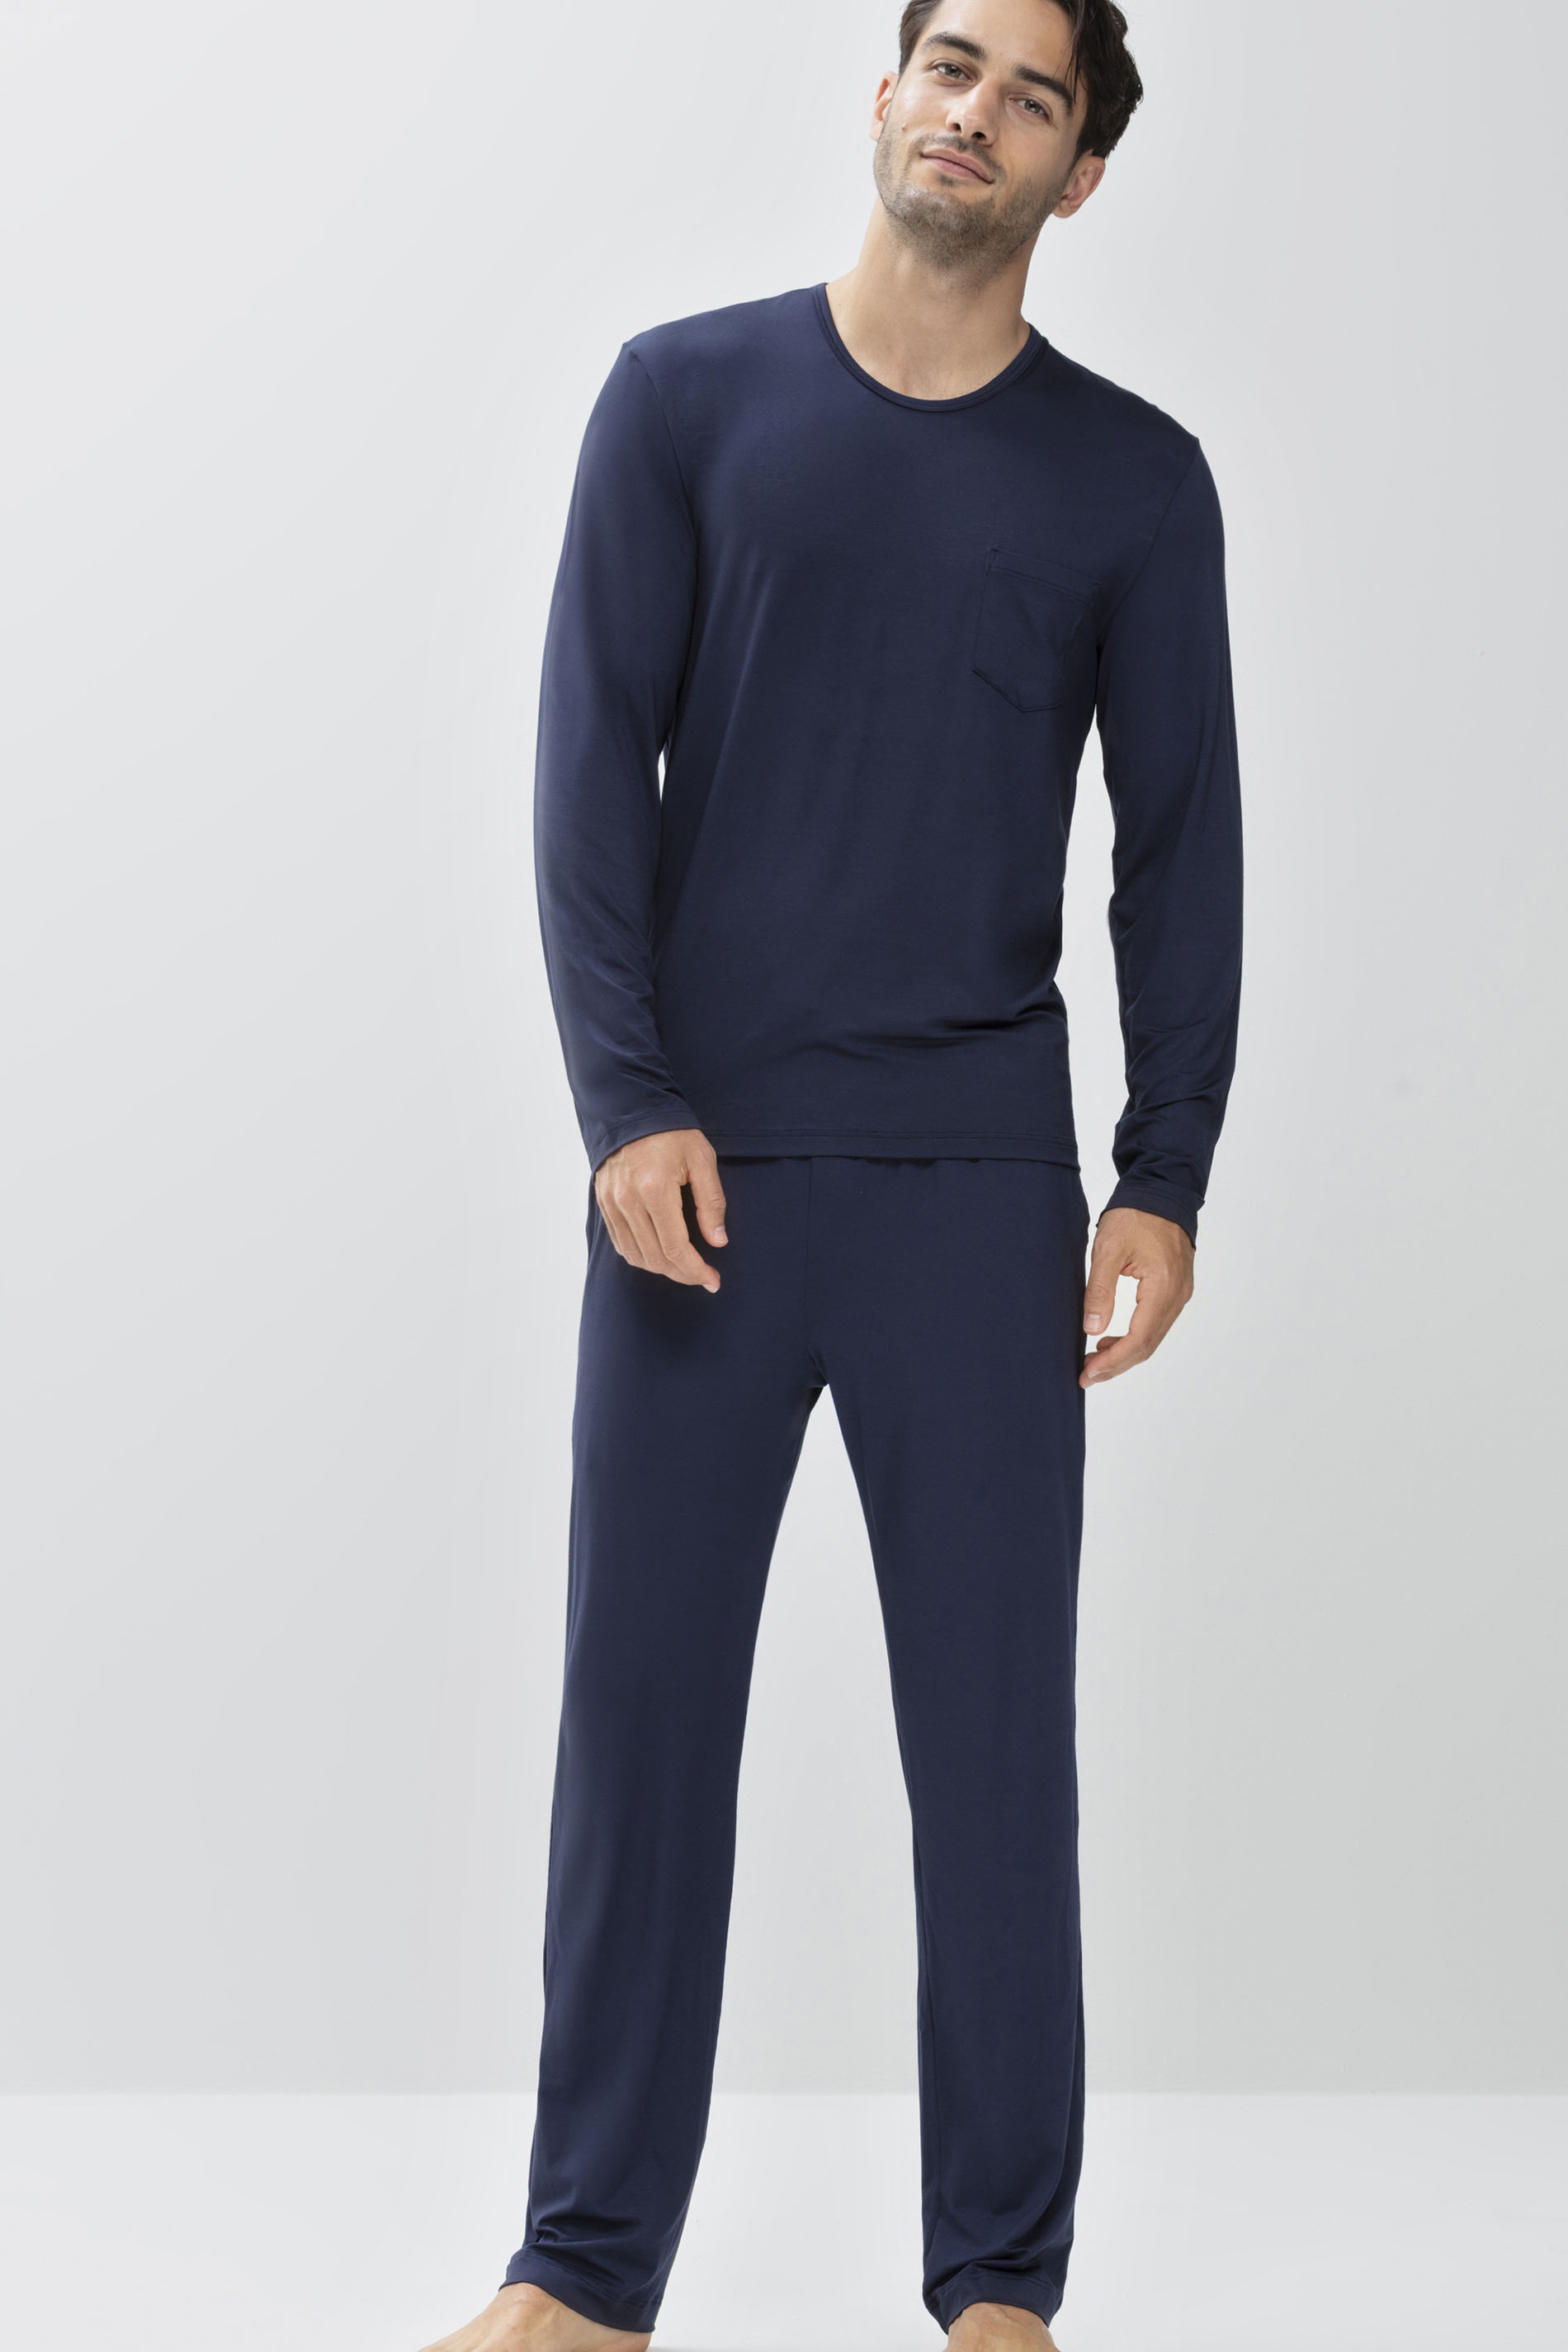 Long pants Yacht Blue Serie Jefferson Modal Festlegen | mey®